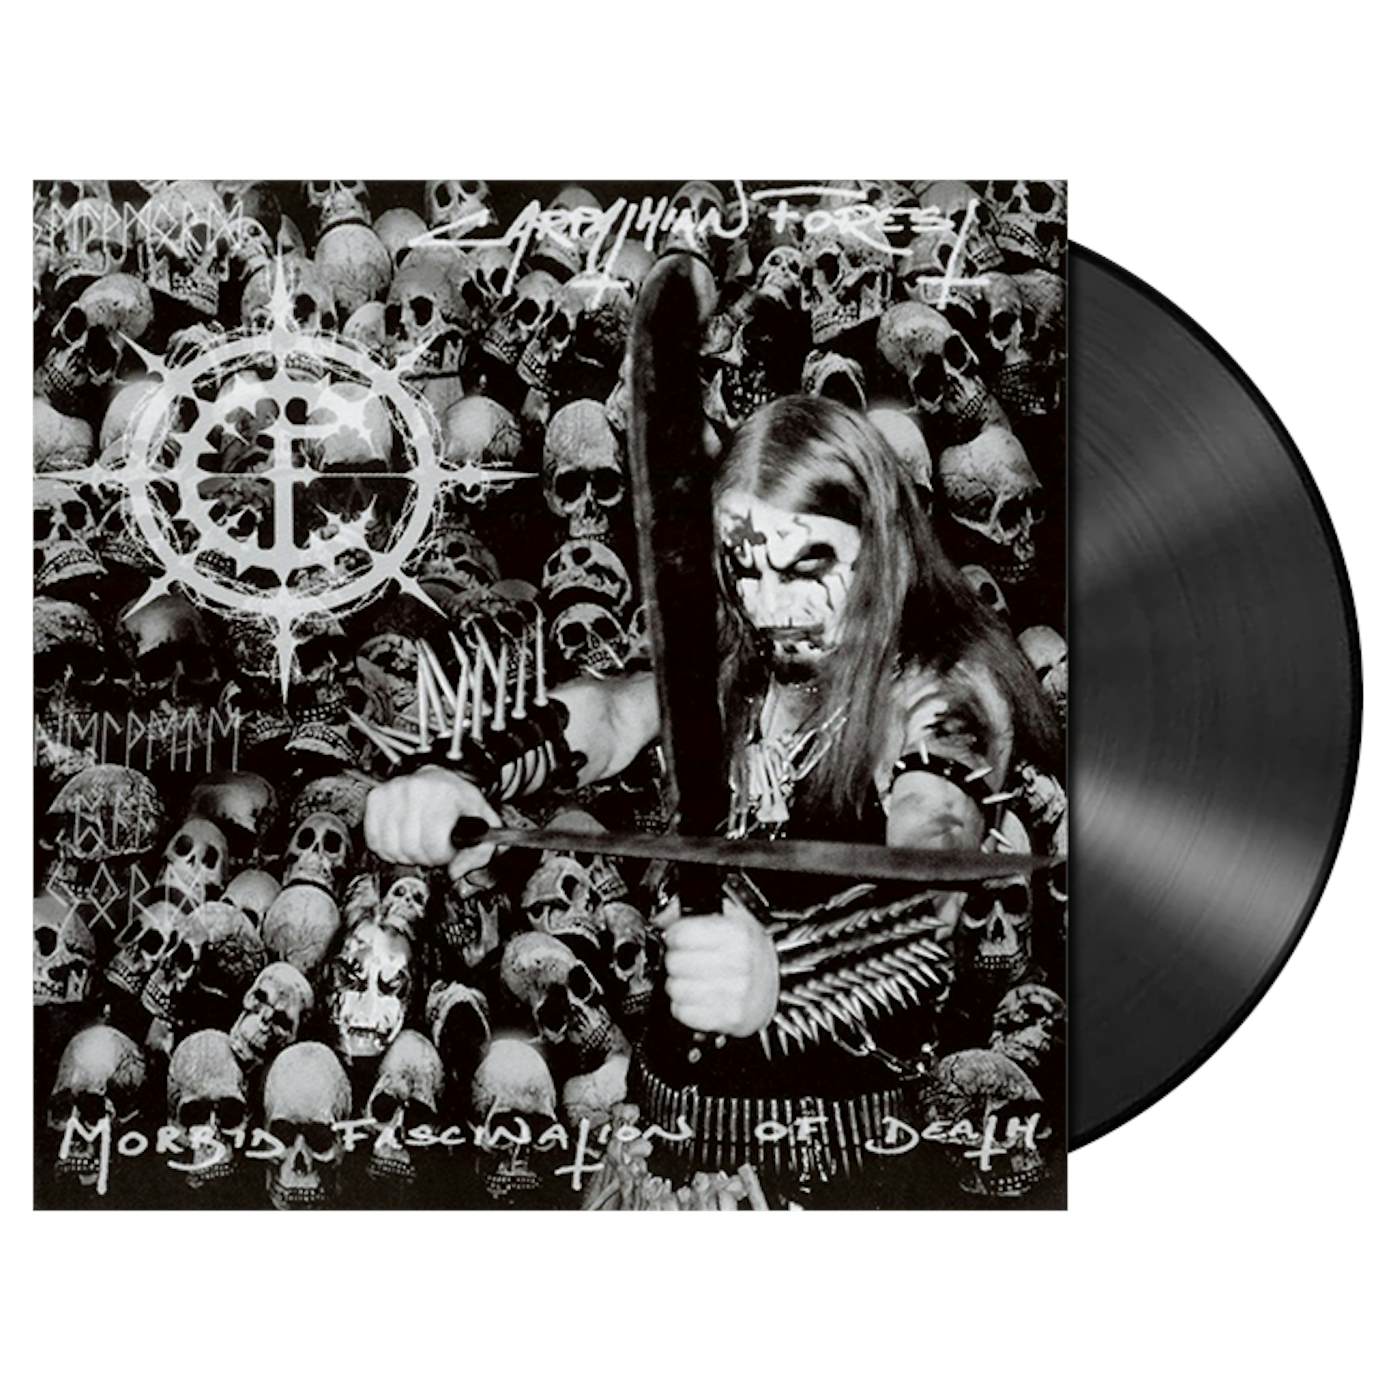 CARPATHIAN FOREST - 'Morbid Fascination of Death’ LP (Vinyl)